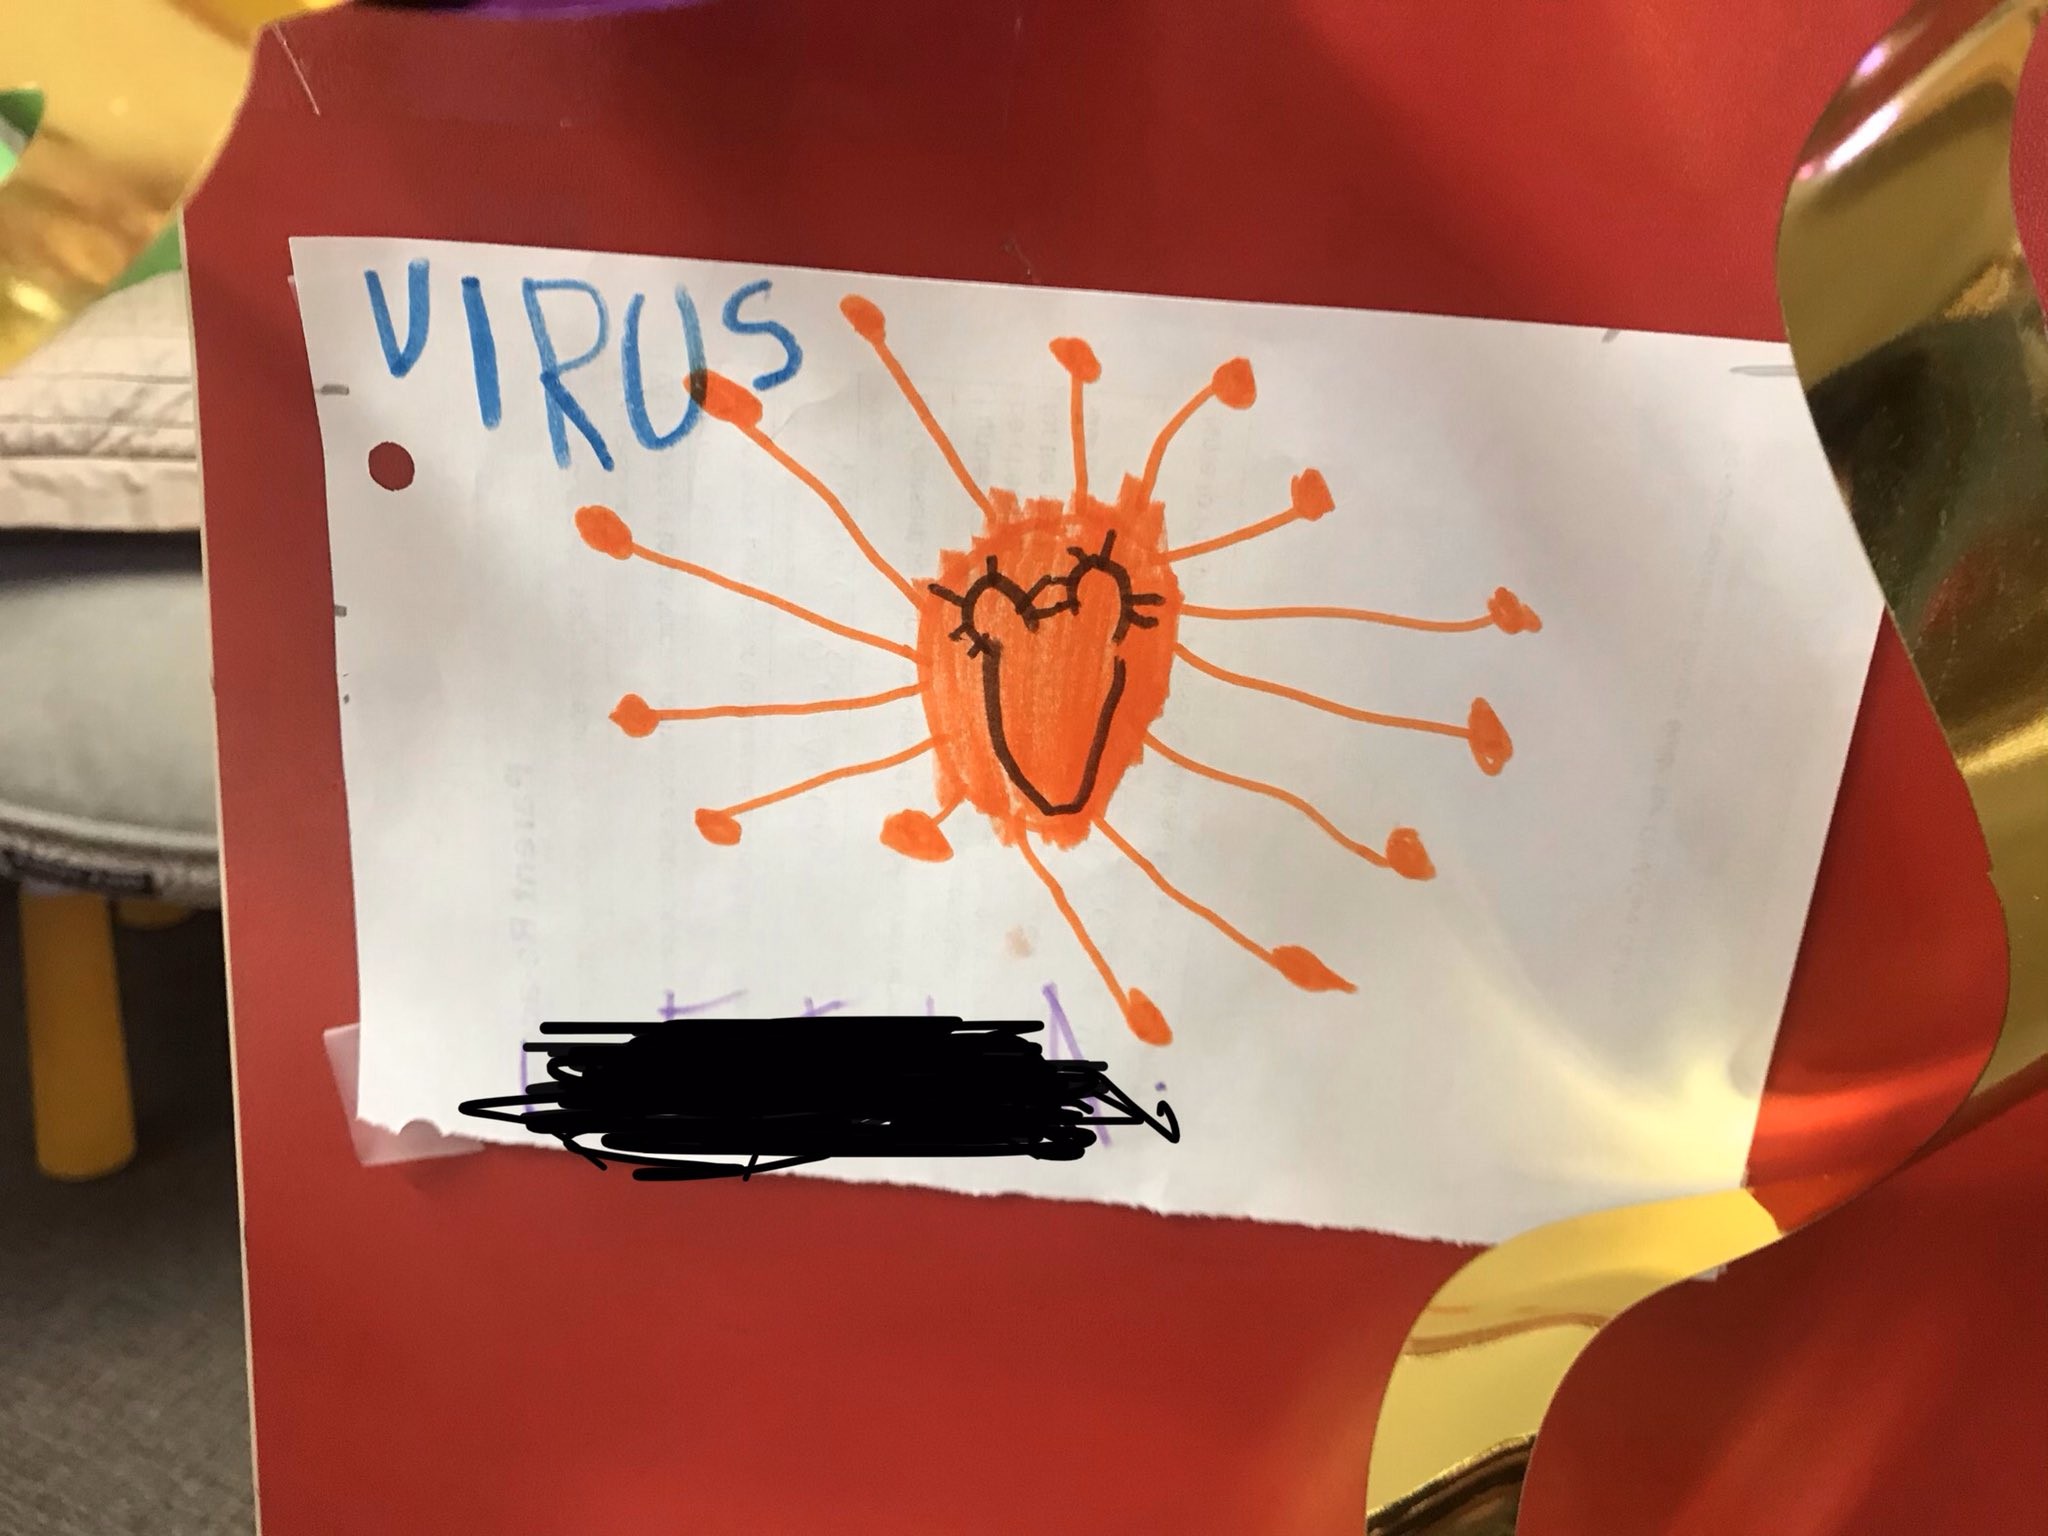 Crianças do mundo inteiro estão desenhando o coronavírus (Foto: Reprodução/ Twitter)